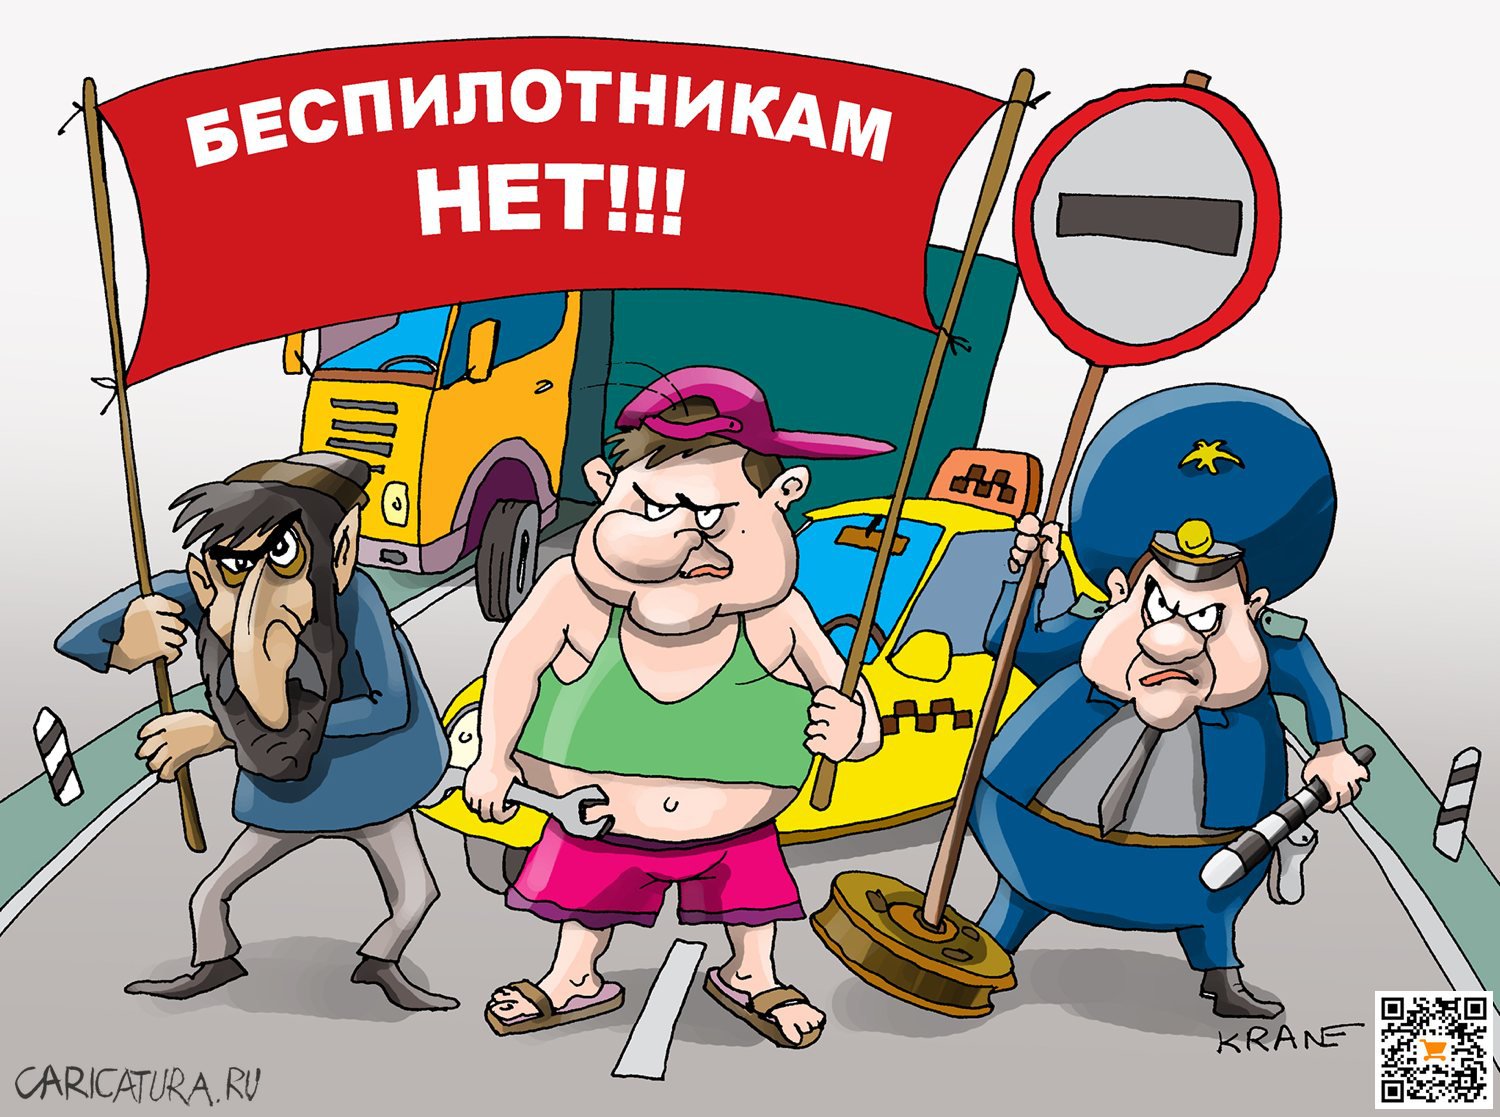 Карикатура "Беспилотникам на наших дорогах нет места!", Евгений Кран